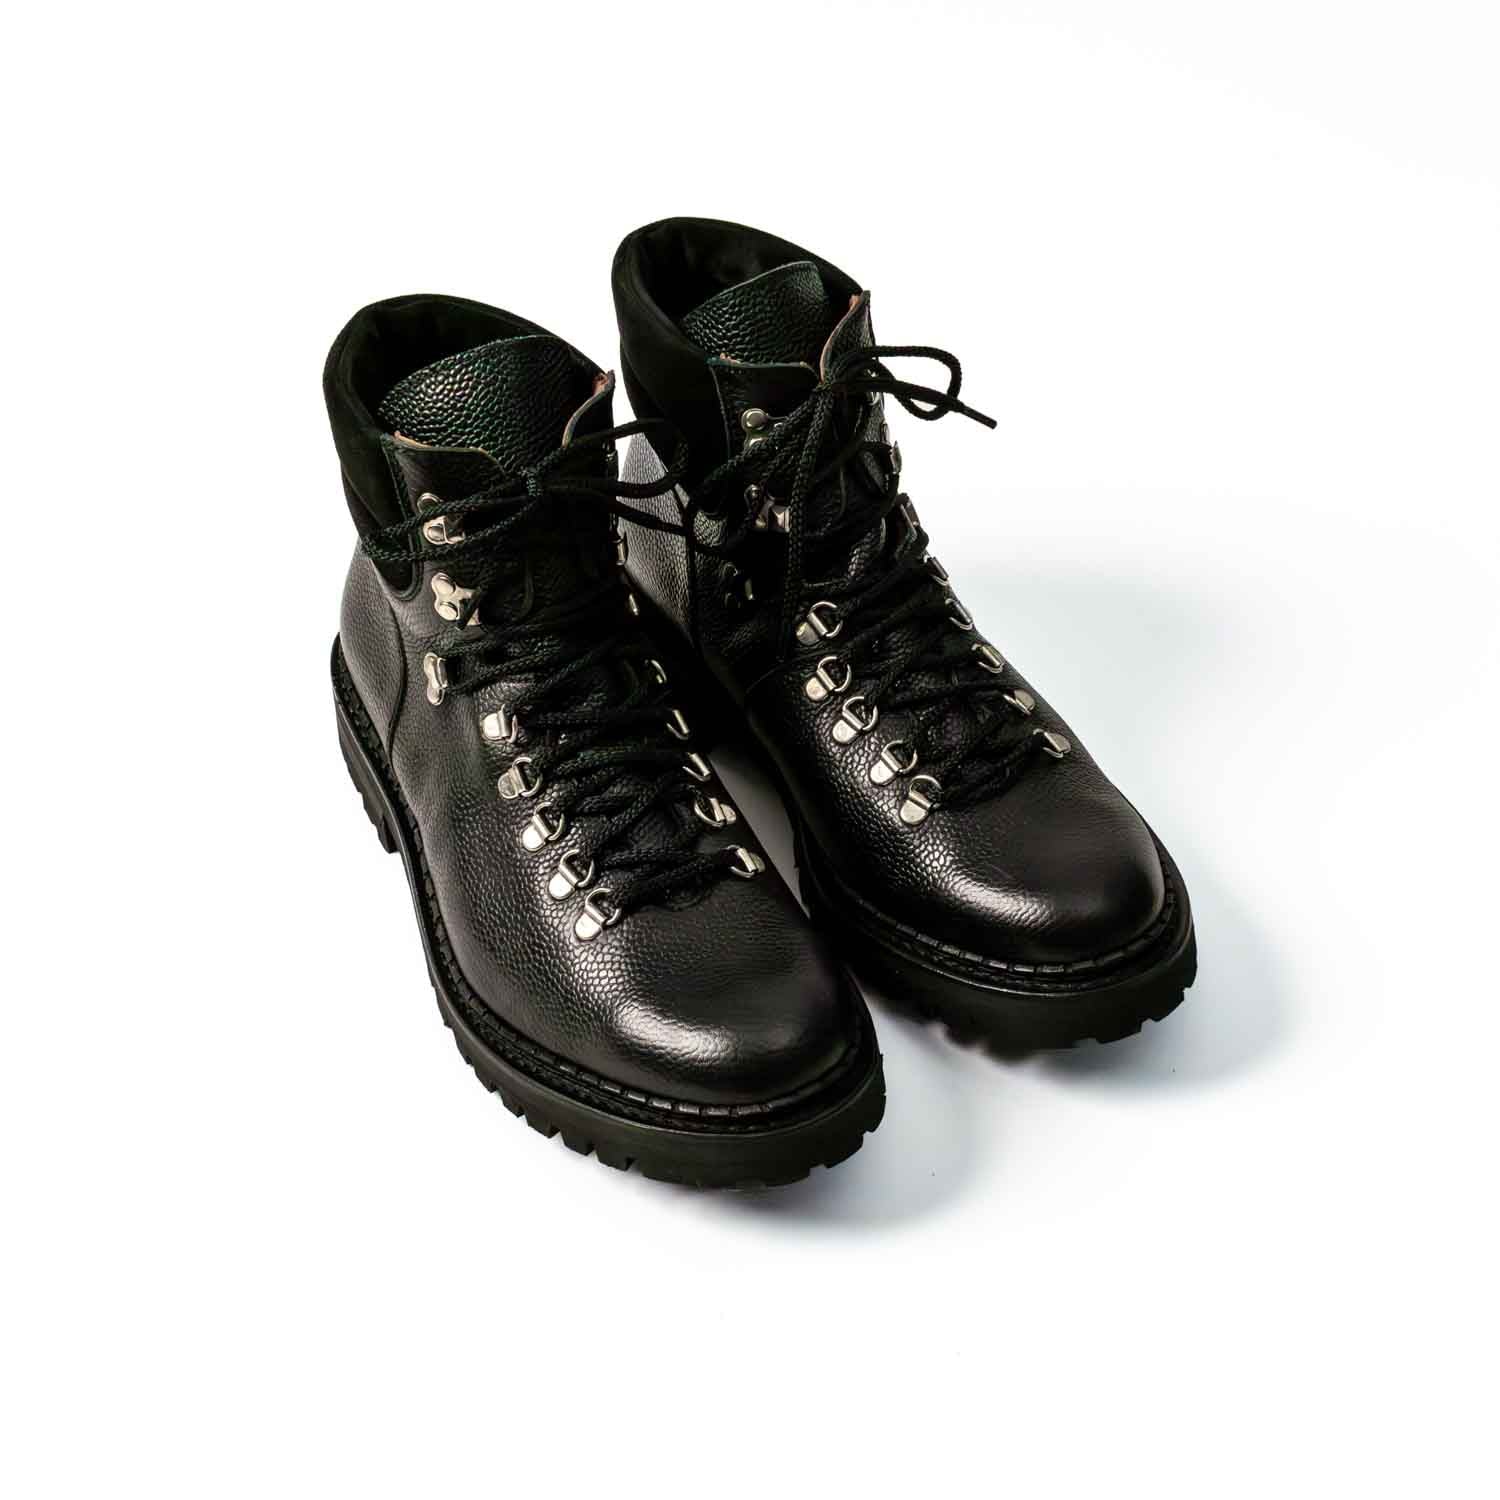 Cliff - Chaussures Hiking Boots Cuir Grainé Noir